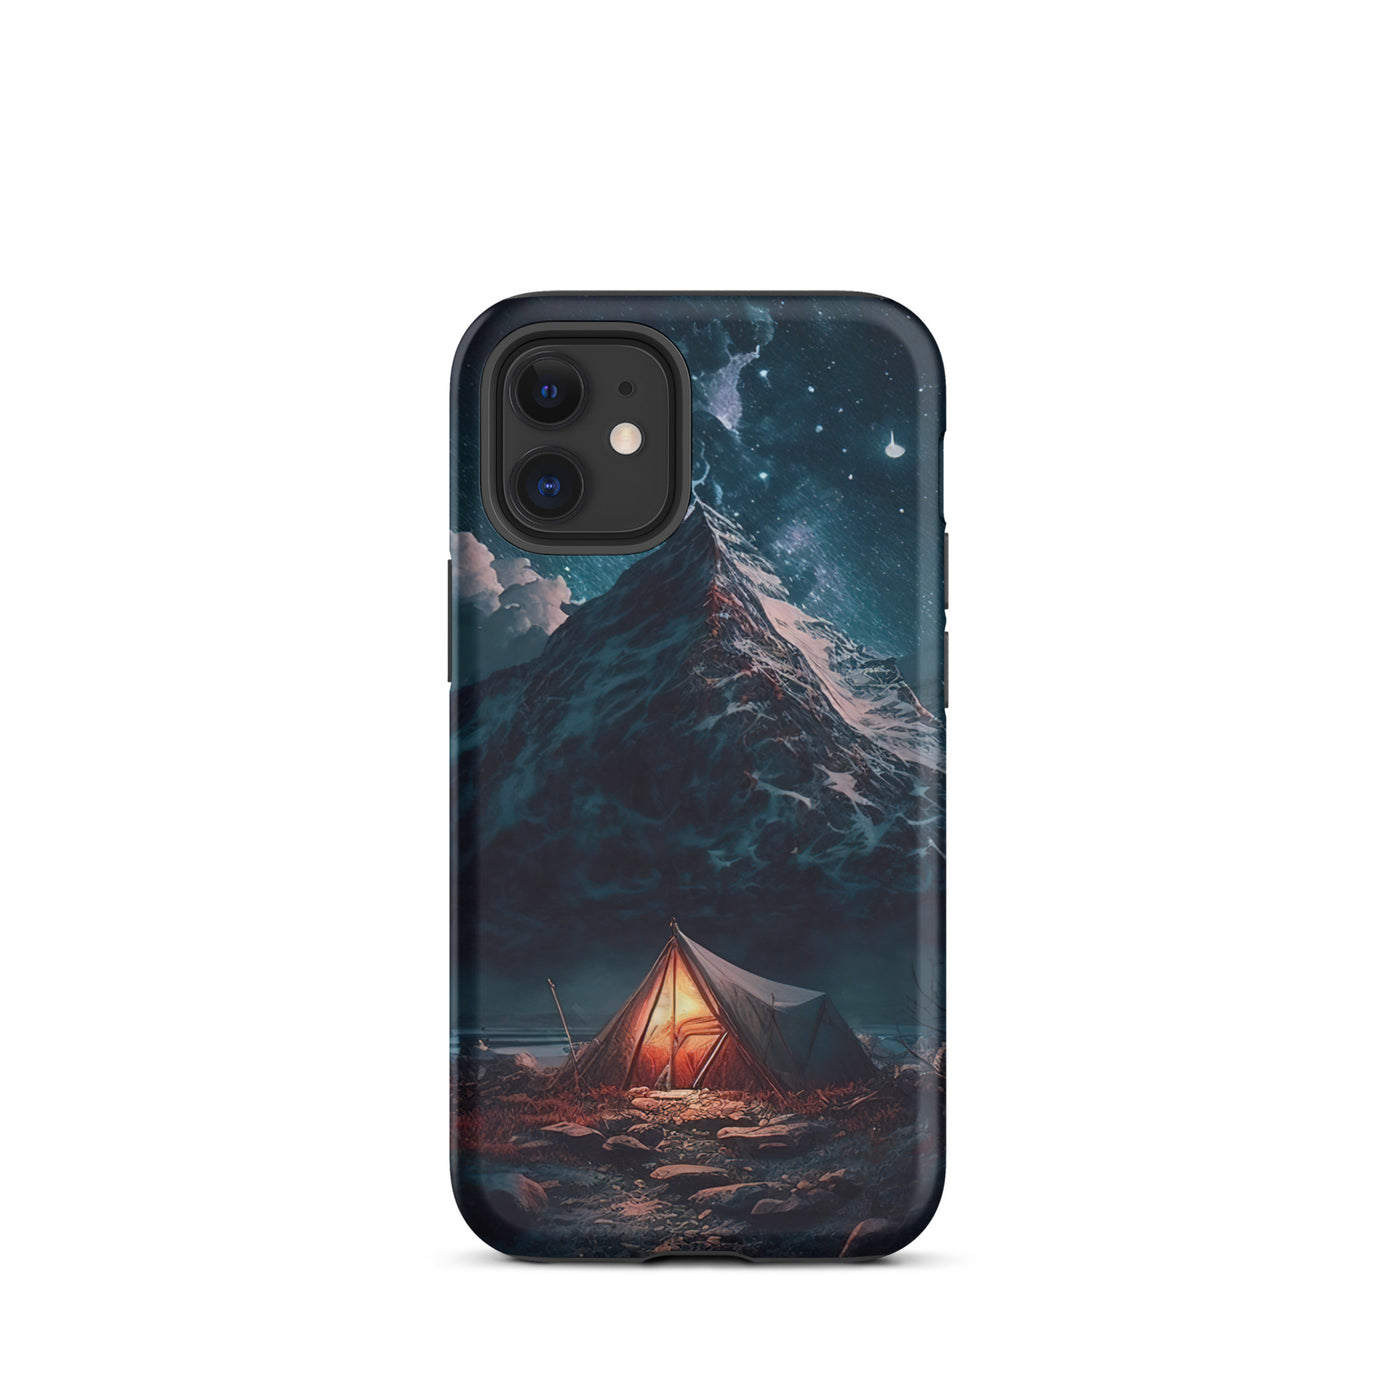 Zelt und Berg in der Nacht - Sterne am Himmel - Landschaftsmalerei - iPhone Schutzhülle (robust) camping xxx iPhone 12 mini